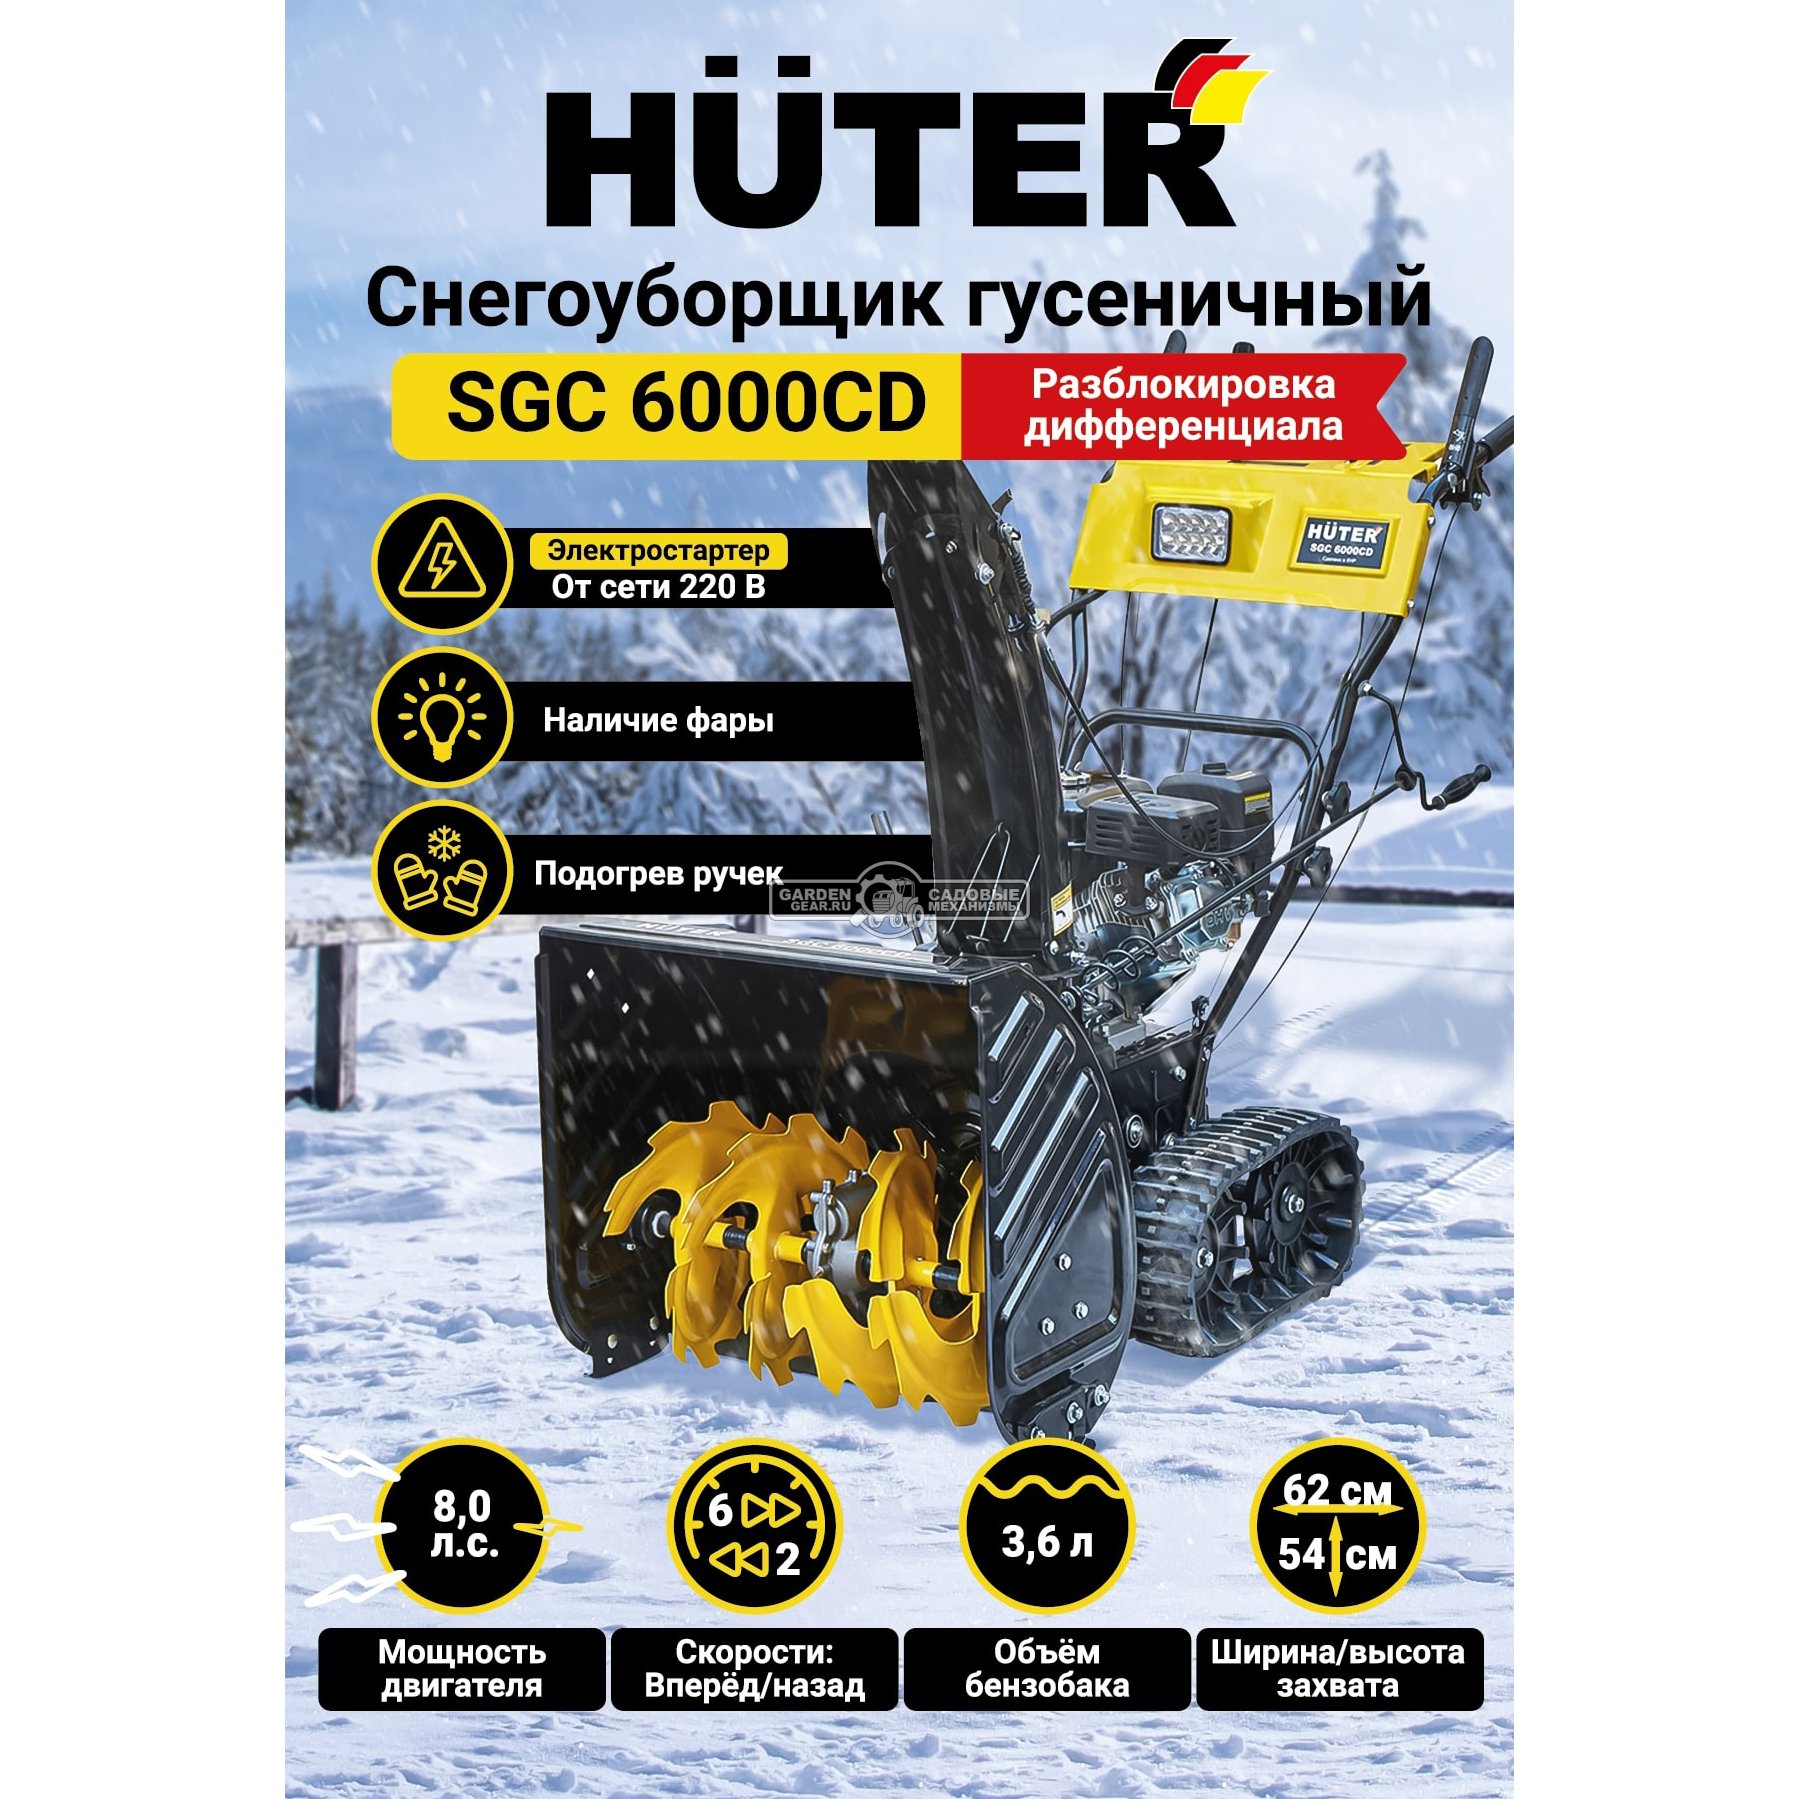 Снегоуборщик Huter SGC 6000CD гусеничный (PRC, 62 см, Huter, 225 см3, эл/стартер 220В, фара, 80 кг)